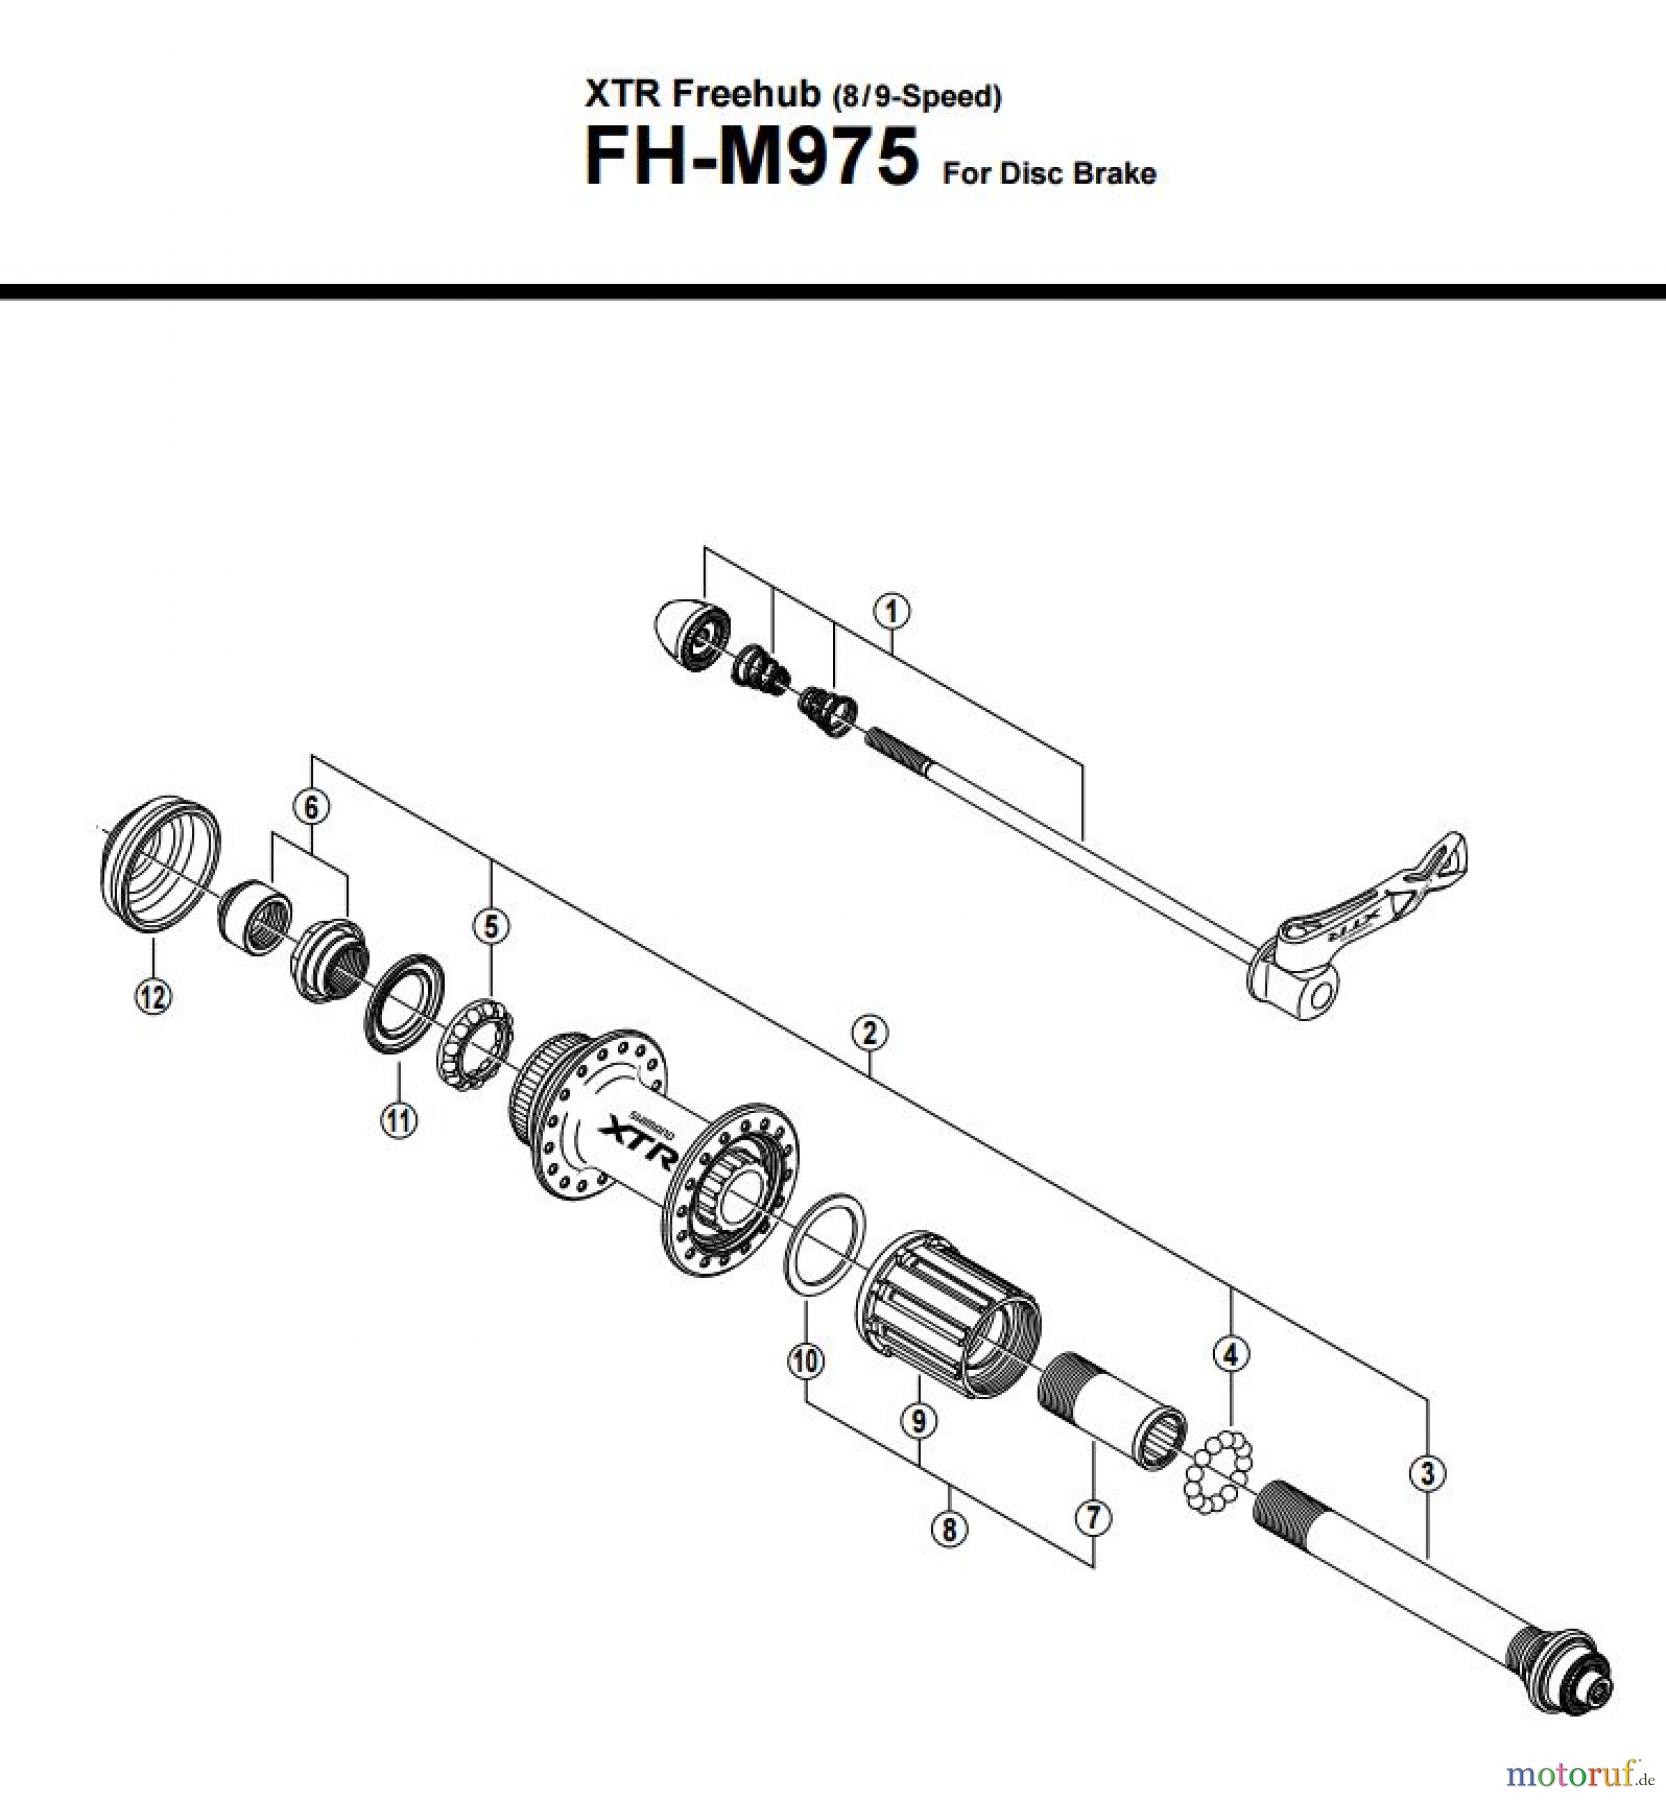  Shimano FH Free Hub - Freilaufnabe FH-M975 -2547A XTR Freehub (8/9-Speed)